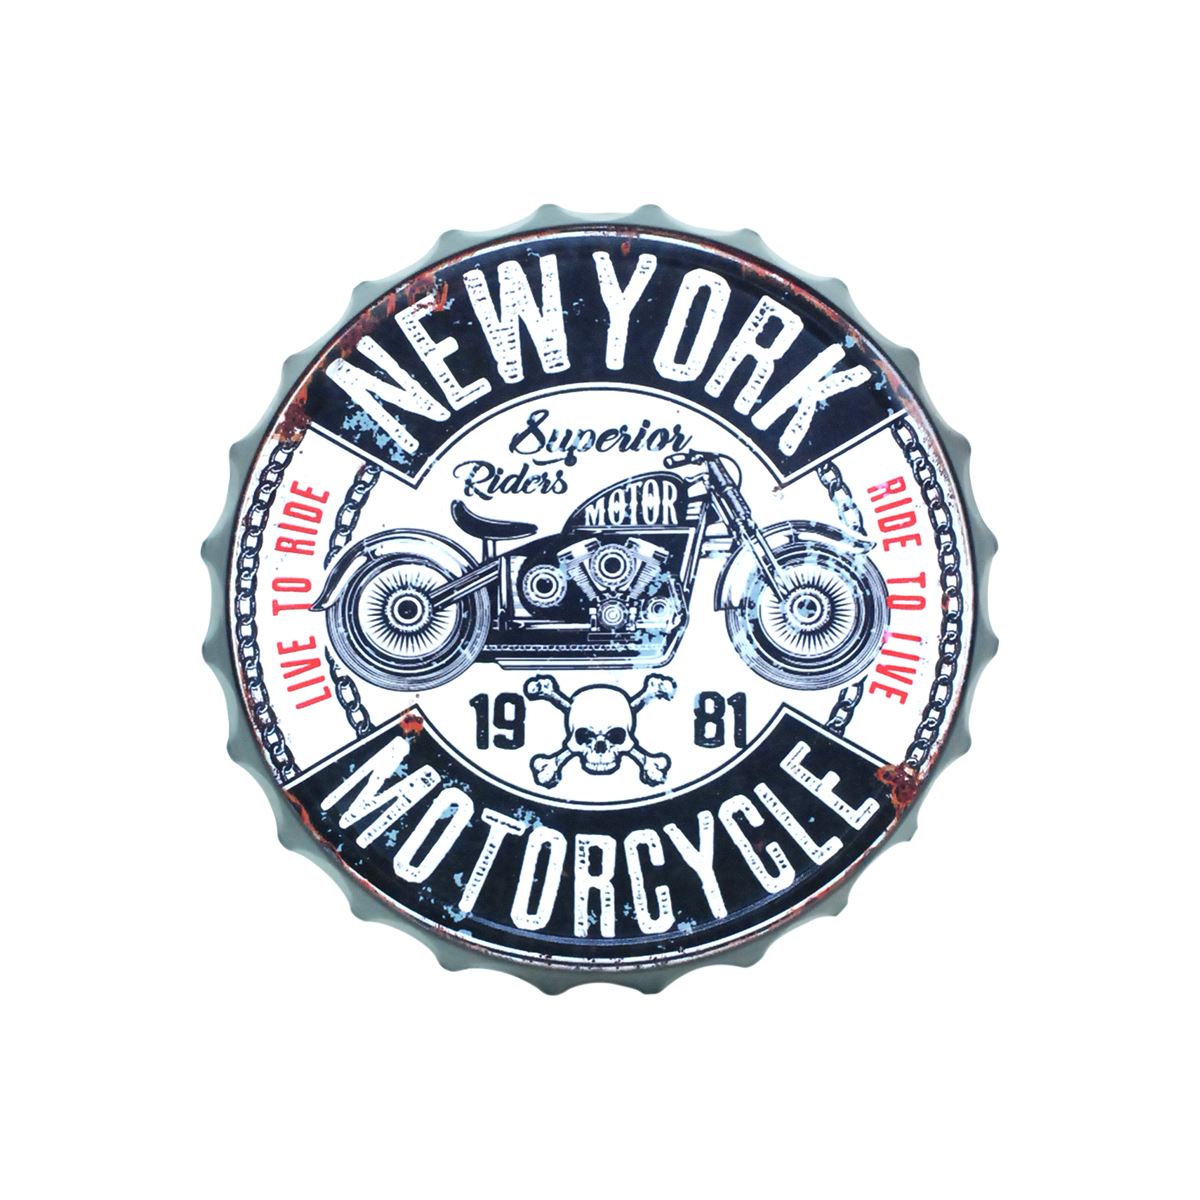 Capsule NEW-YORK motorcycle